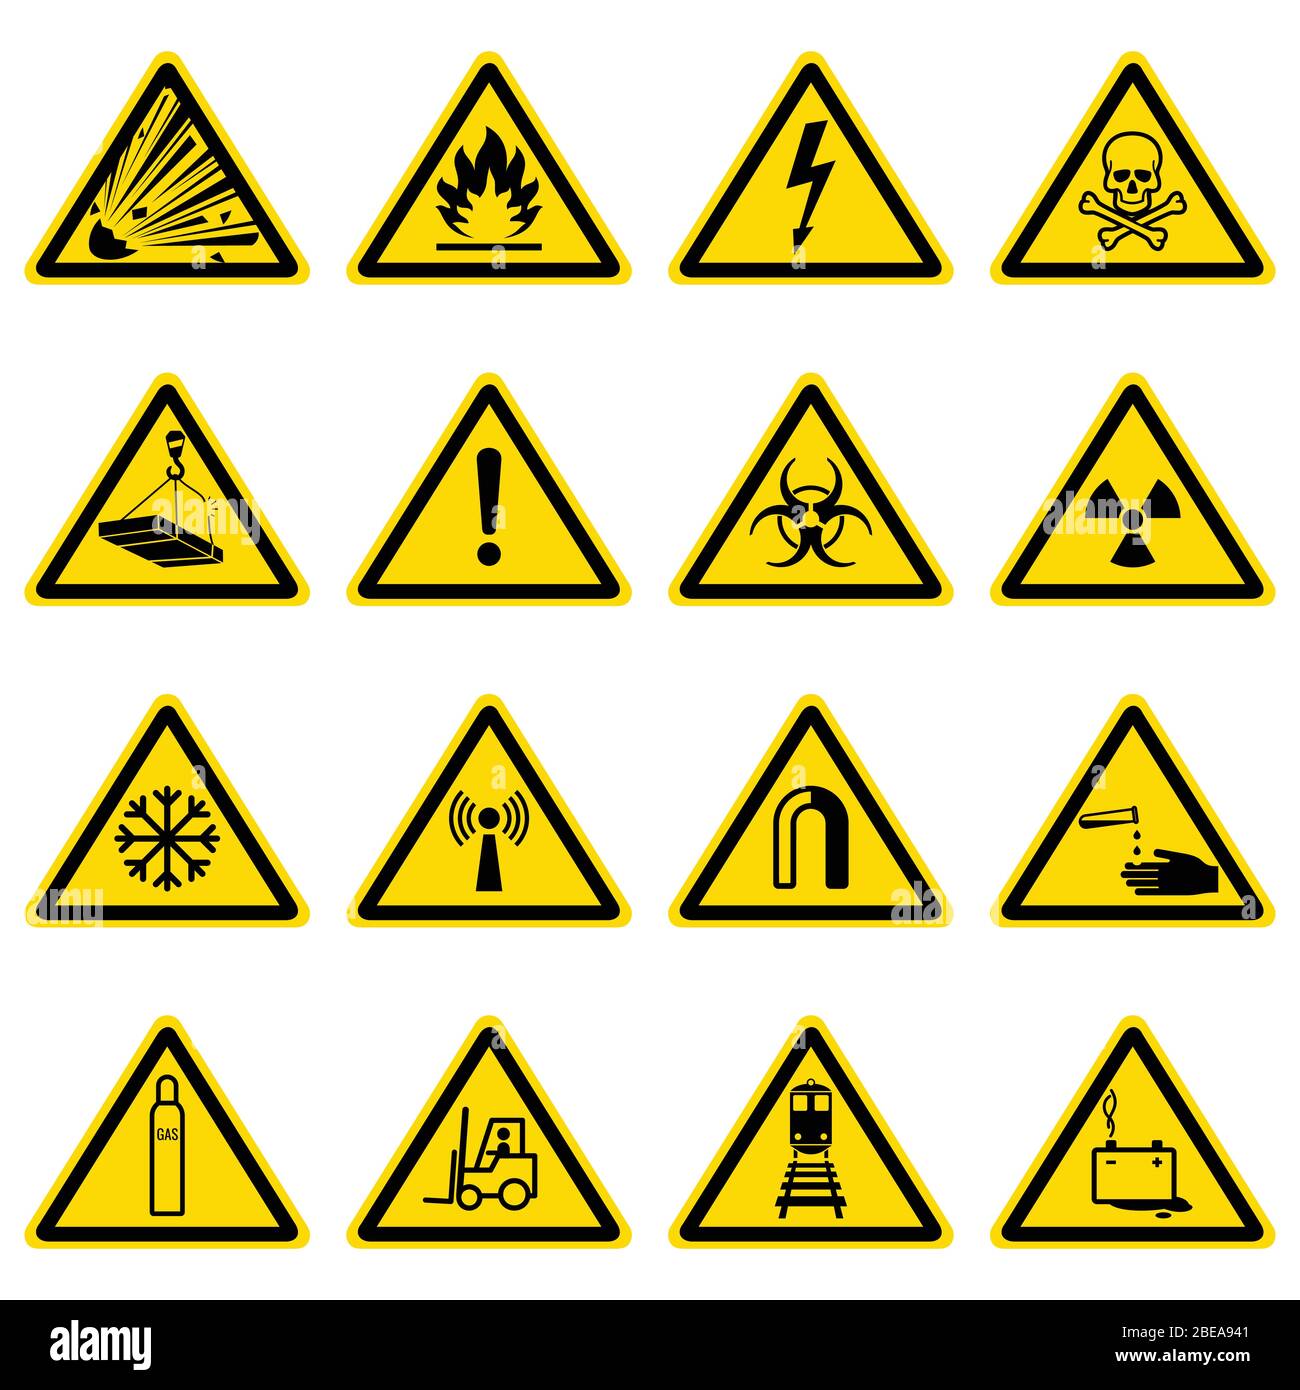 Symboles d'avertissement et de danger sur la collection de triangles jaunes vectoriels. Illustration des informations relatives à la sécurité et à la prudence et aux alertes de risque Illustration de Vecteur